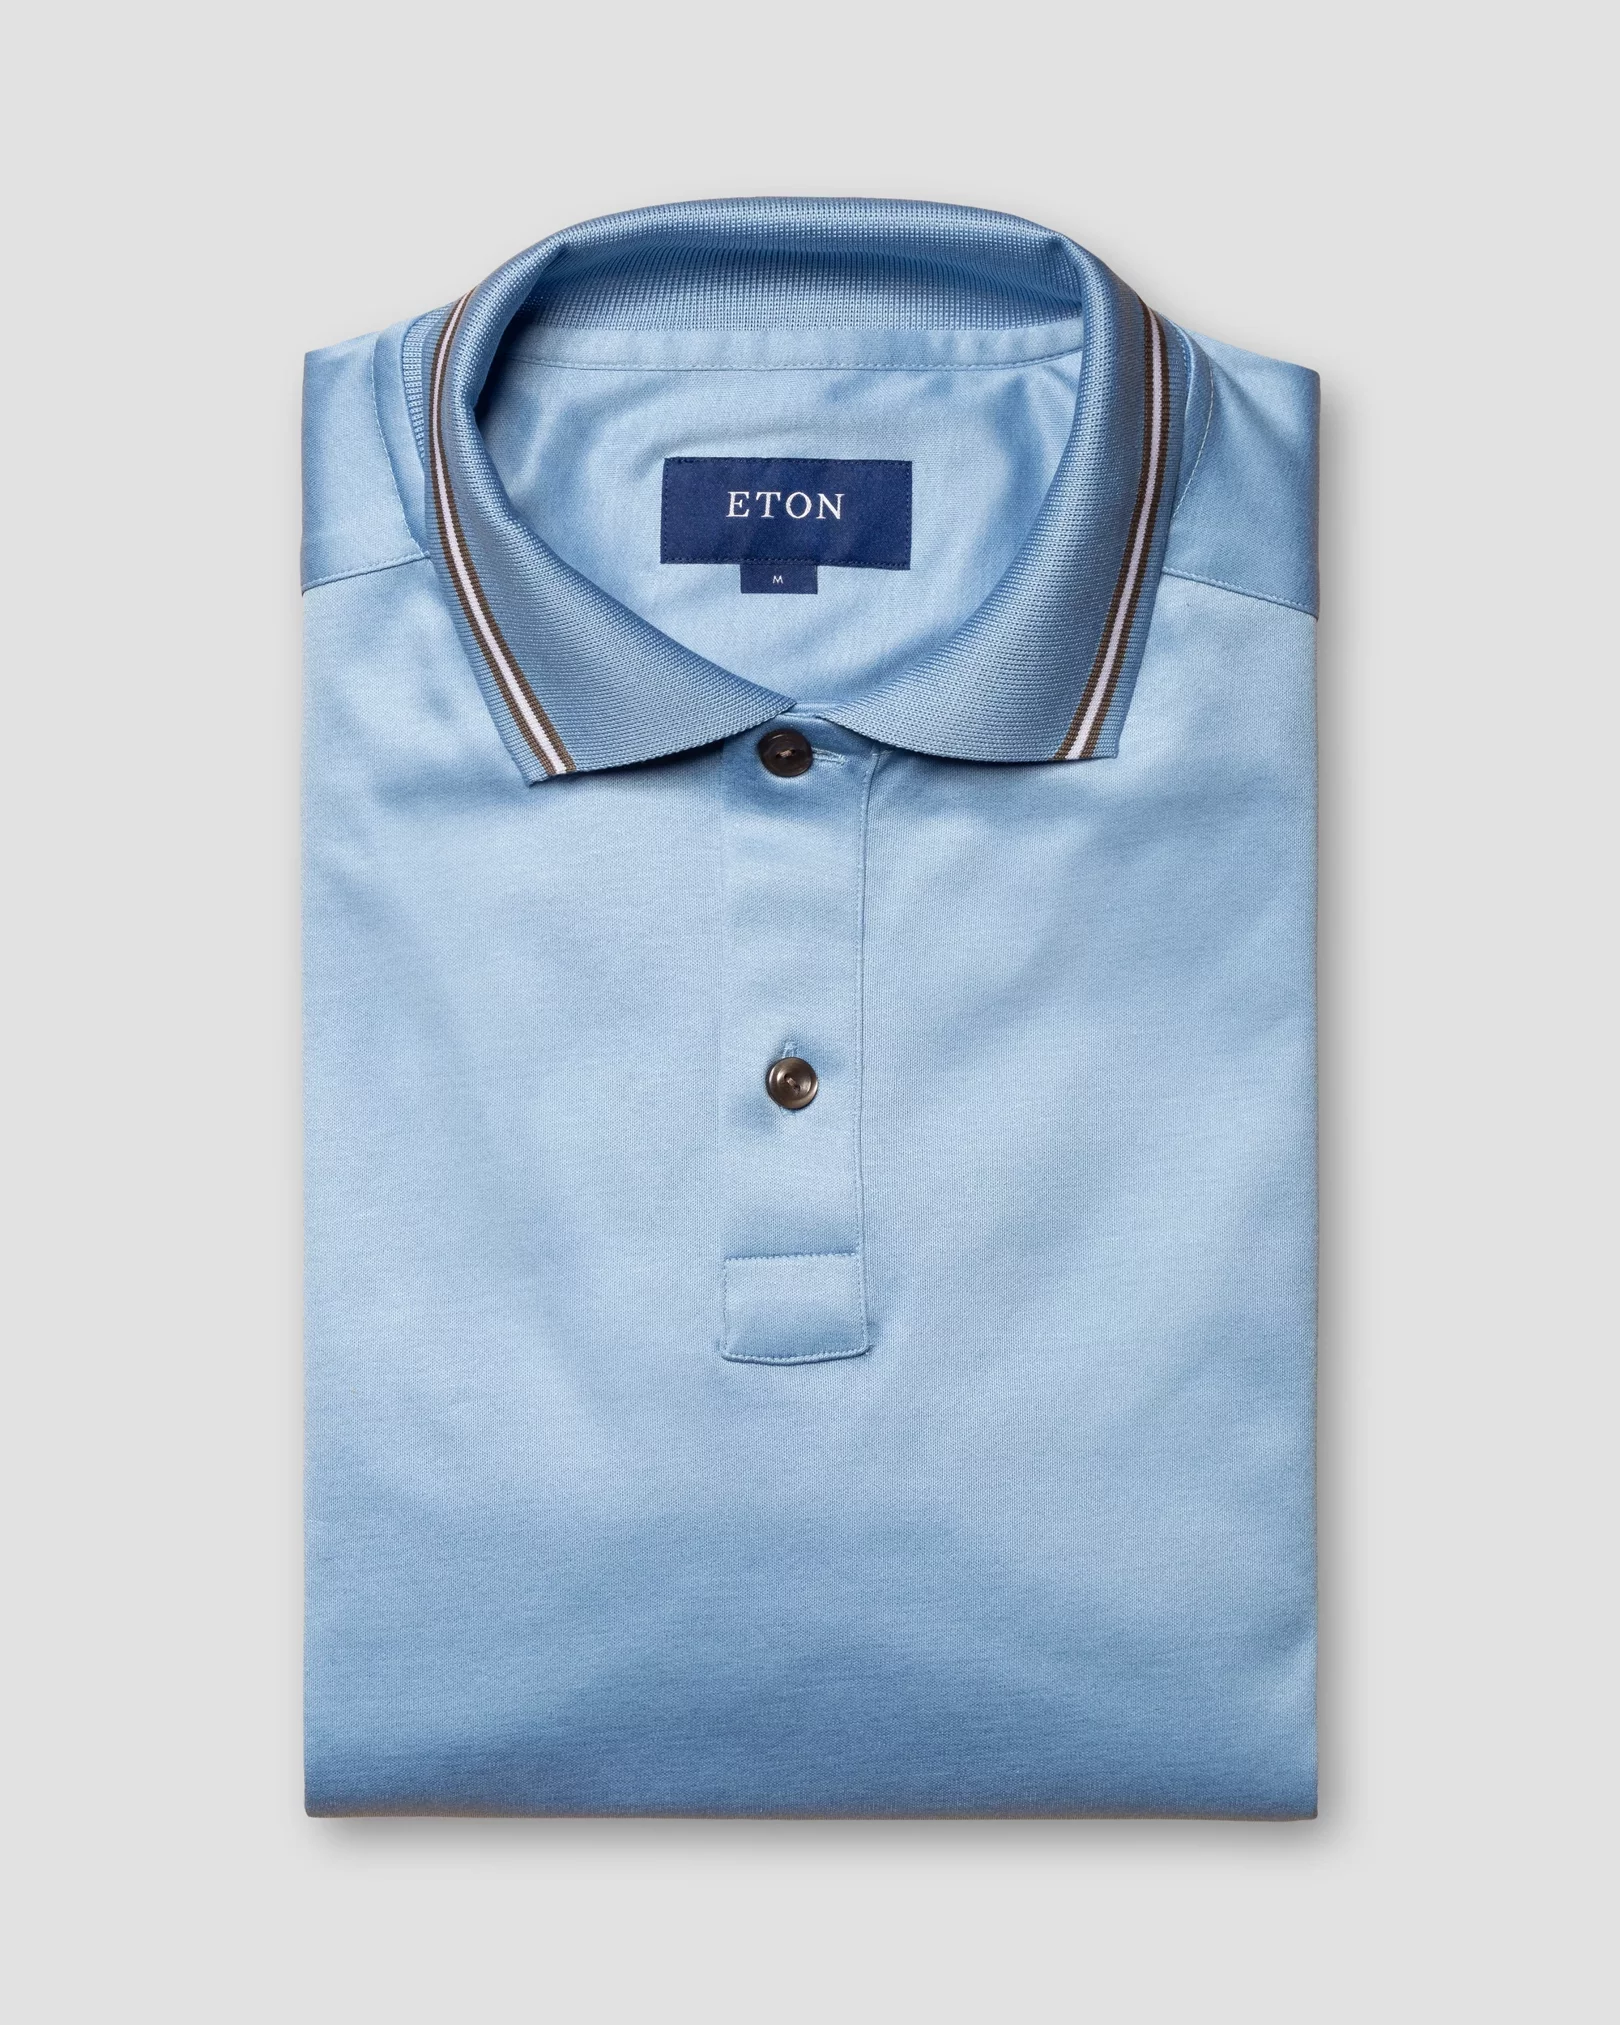 Eton - light blue jersey knitted collar no cuff jersey long sleeve regular fit jersey